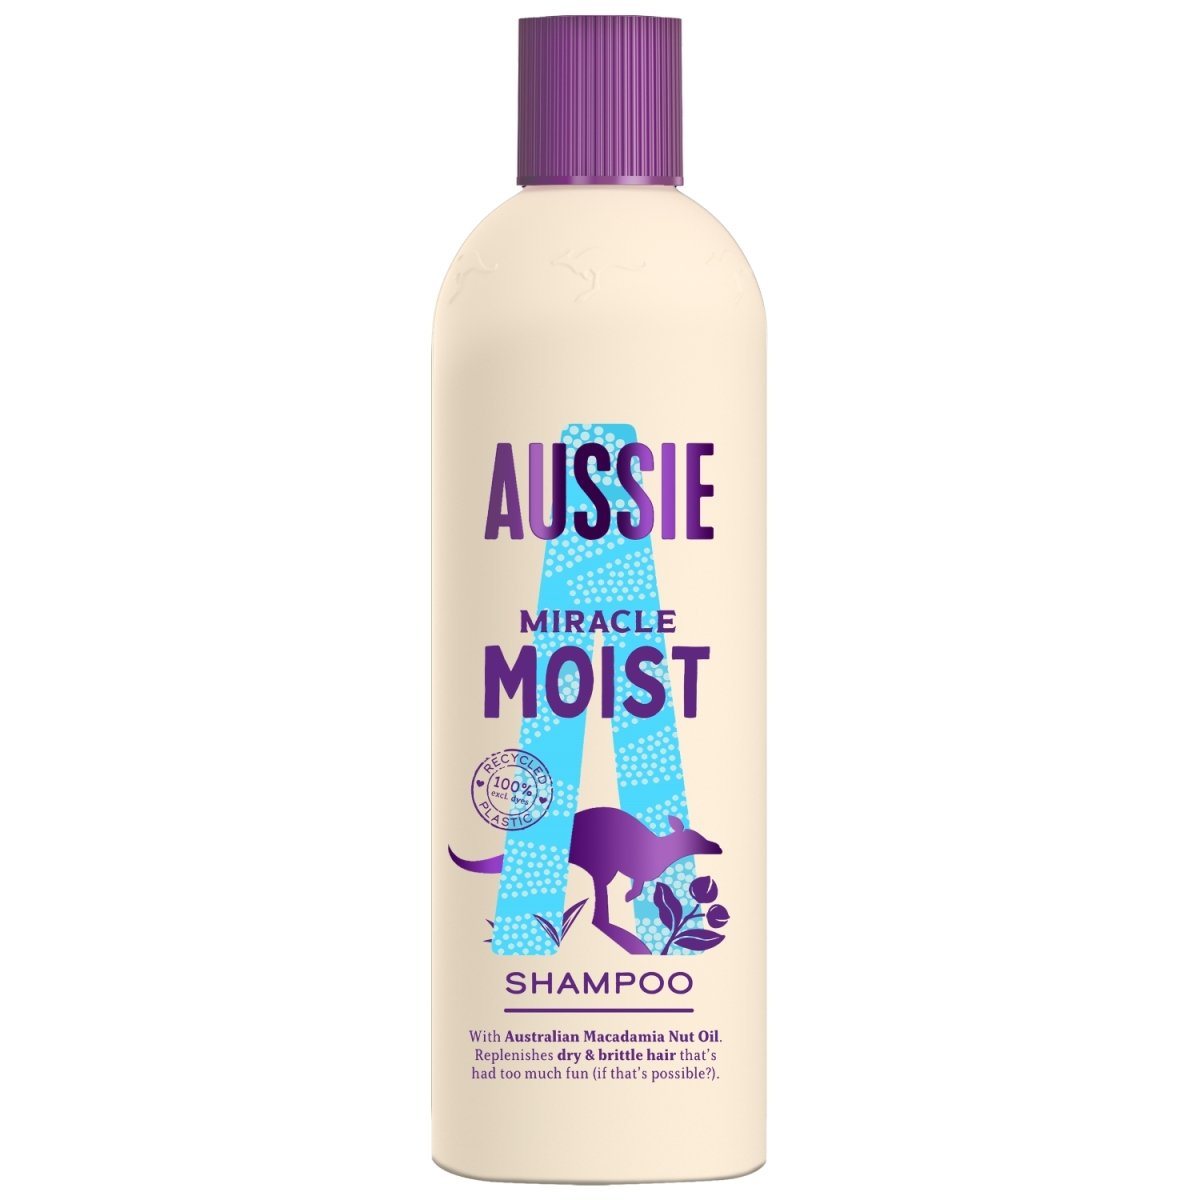 Aussie Shampoo 250ml Miracle Moist - Intamarque 8006540123850